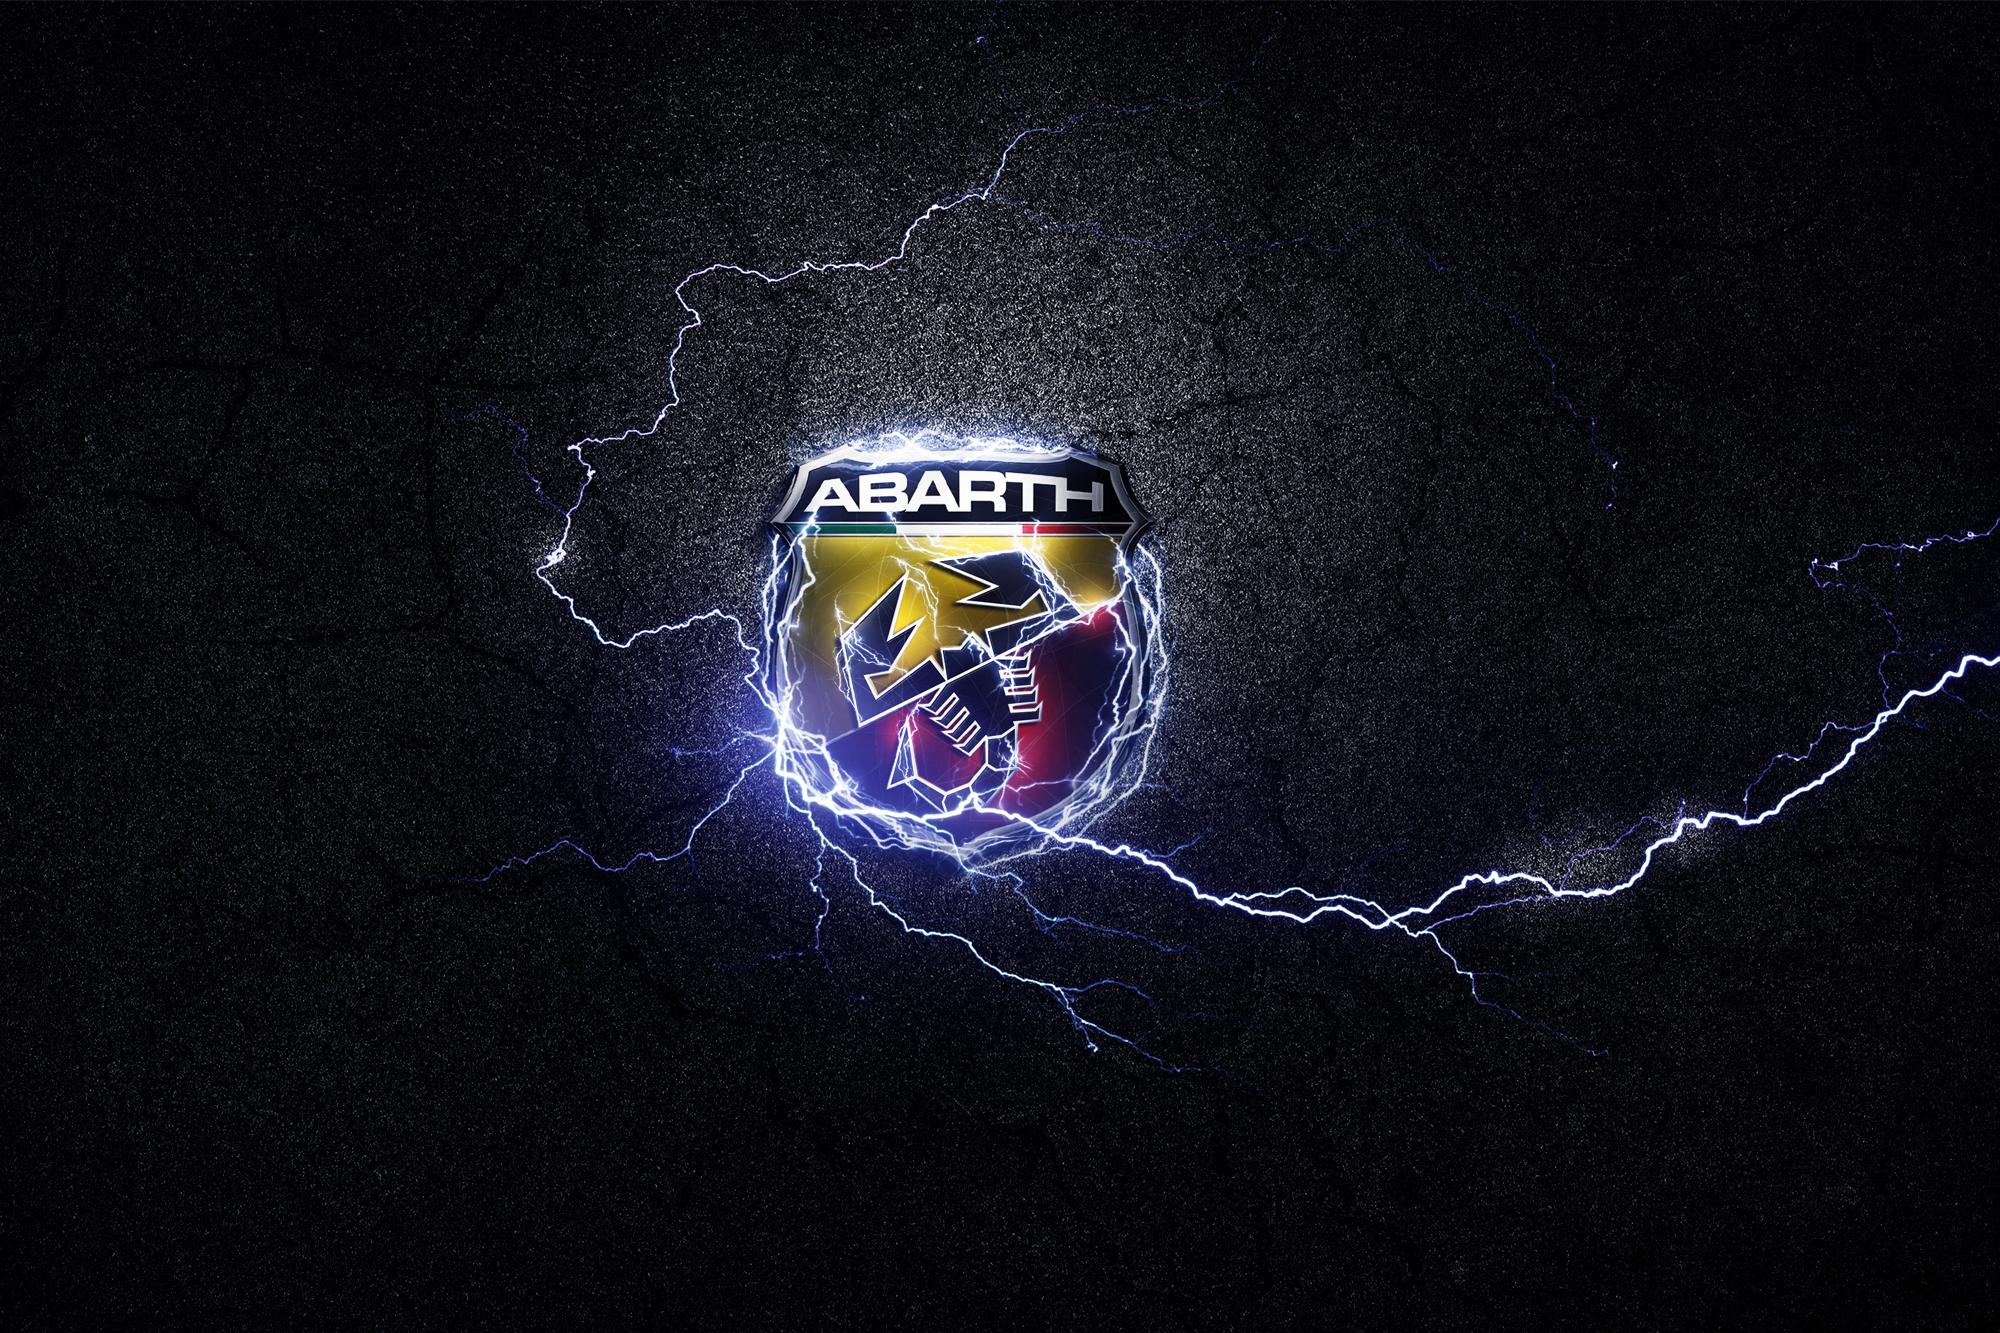 Ηλεκτρικό Ροκ από την Abarth